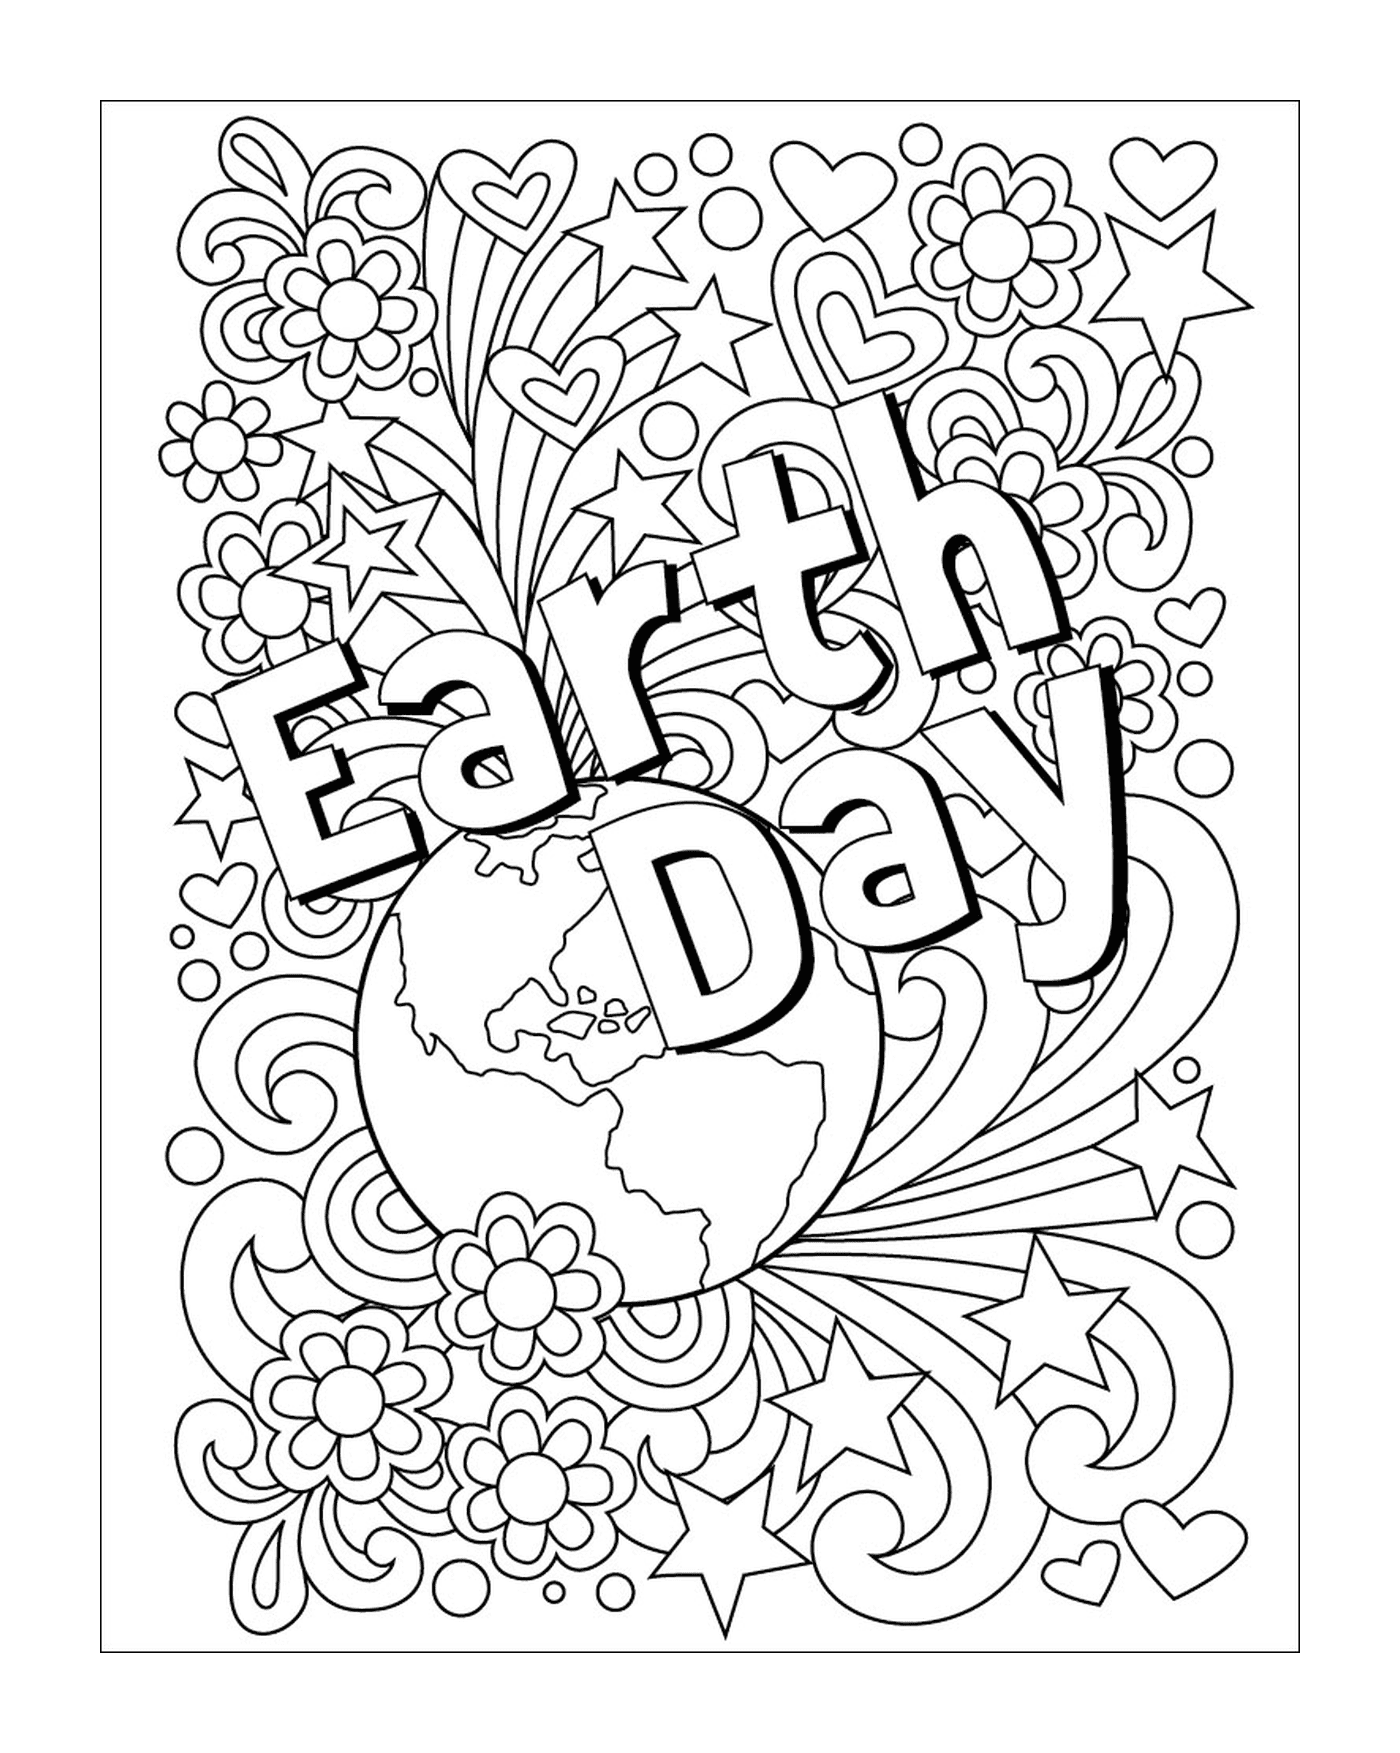  День взрослых для Земли, цветов и глобуса 